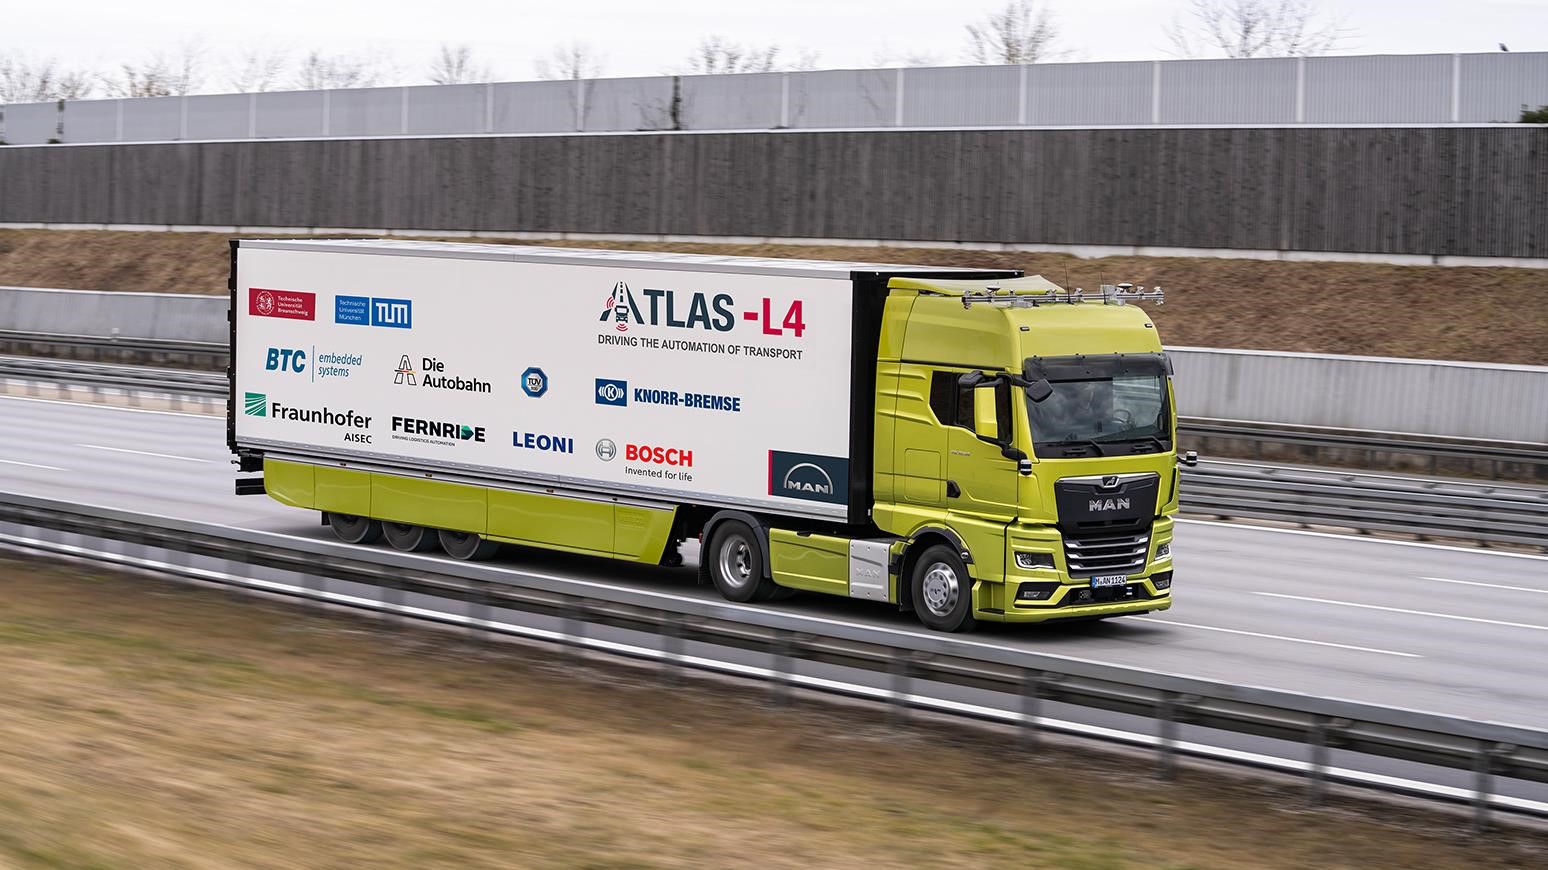 MAN Truck & Bus Participating In ATLAS-L4 Autonomous Driving Project